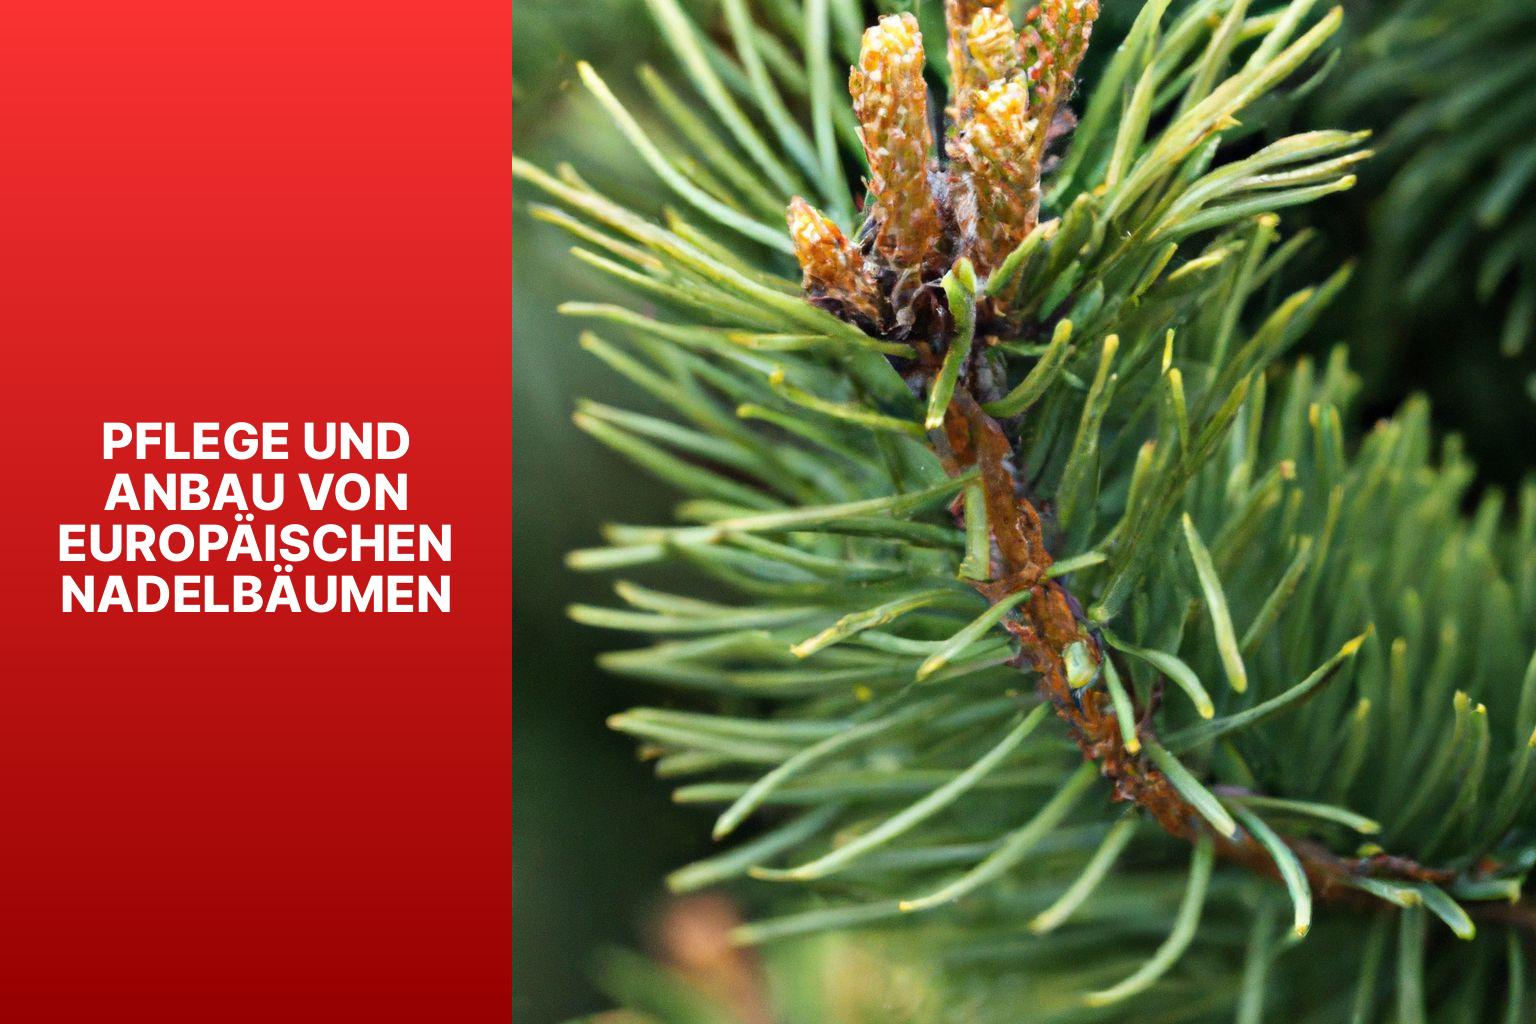 Pflege und Anbau von europäischen Nadelbäumen - europäische Nadelbäume 